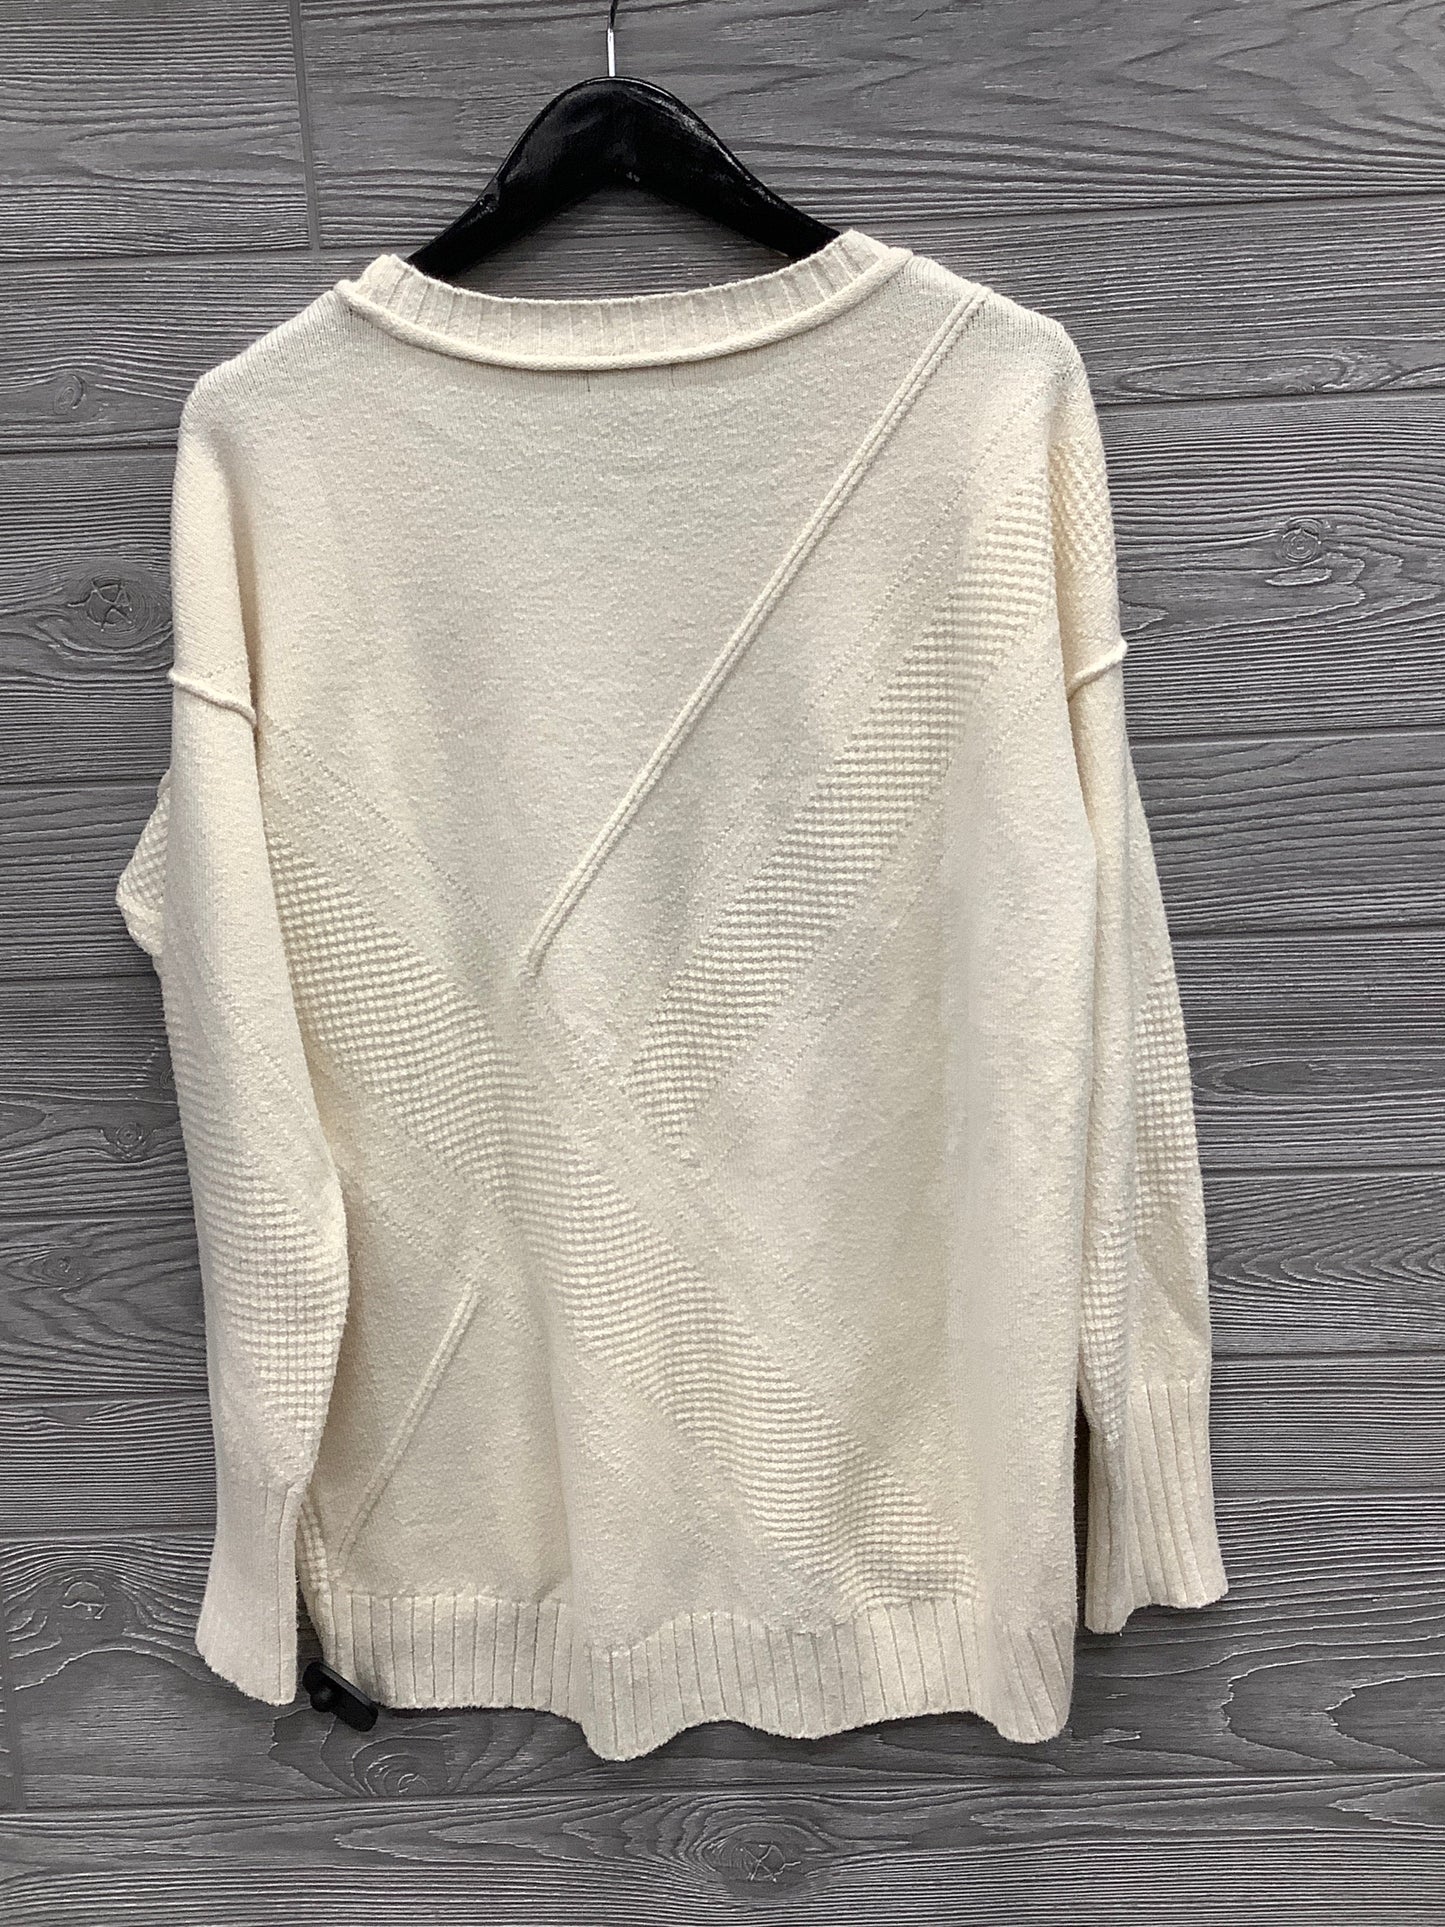 Sweater By Calvin Klein  Size: Xl